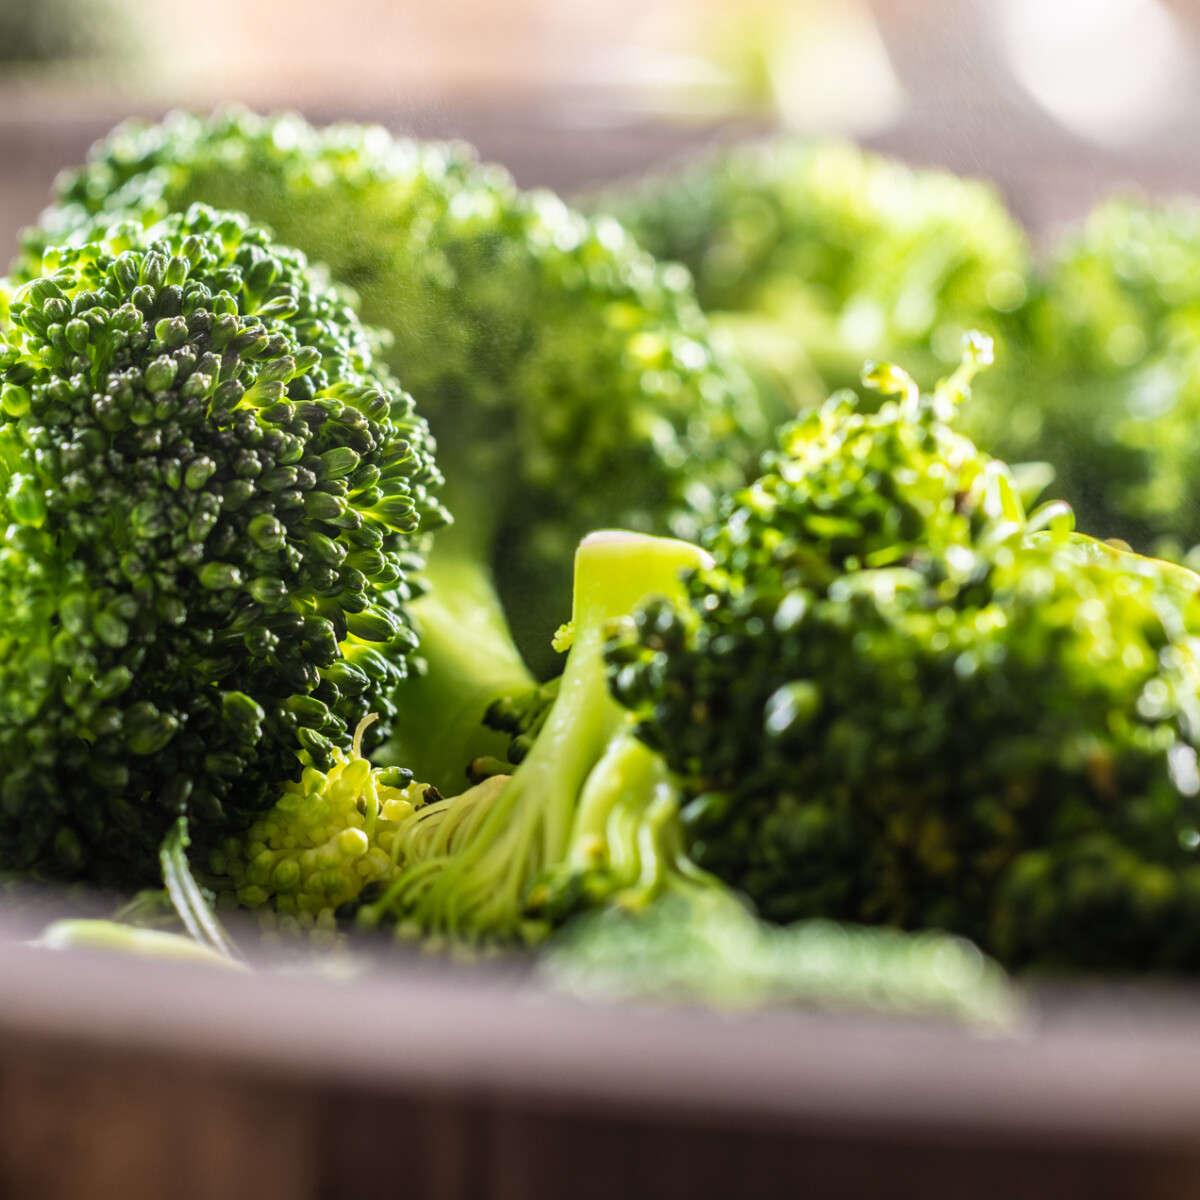 Súlyos problémát kerülhetünk el, ha rendszeresen eszünk brokkolit